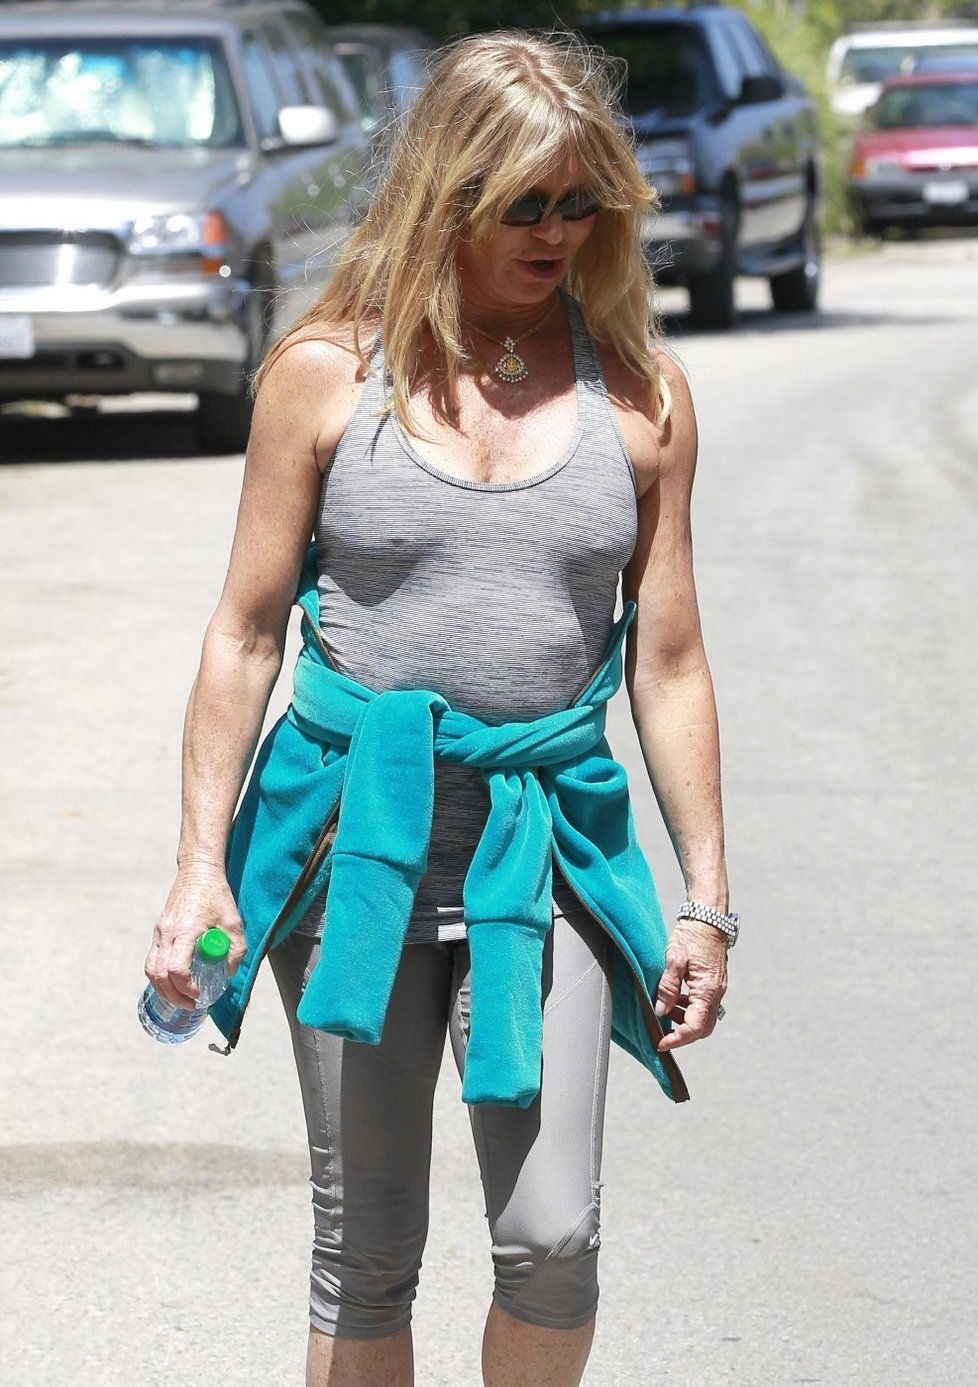 Herečka Goldie Hawn se za svě tělo vůbec nestydí. Při sportu si zřejmě zásadně sundává podprsenku.